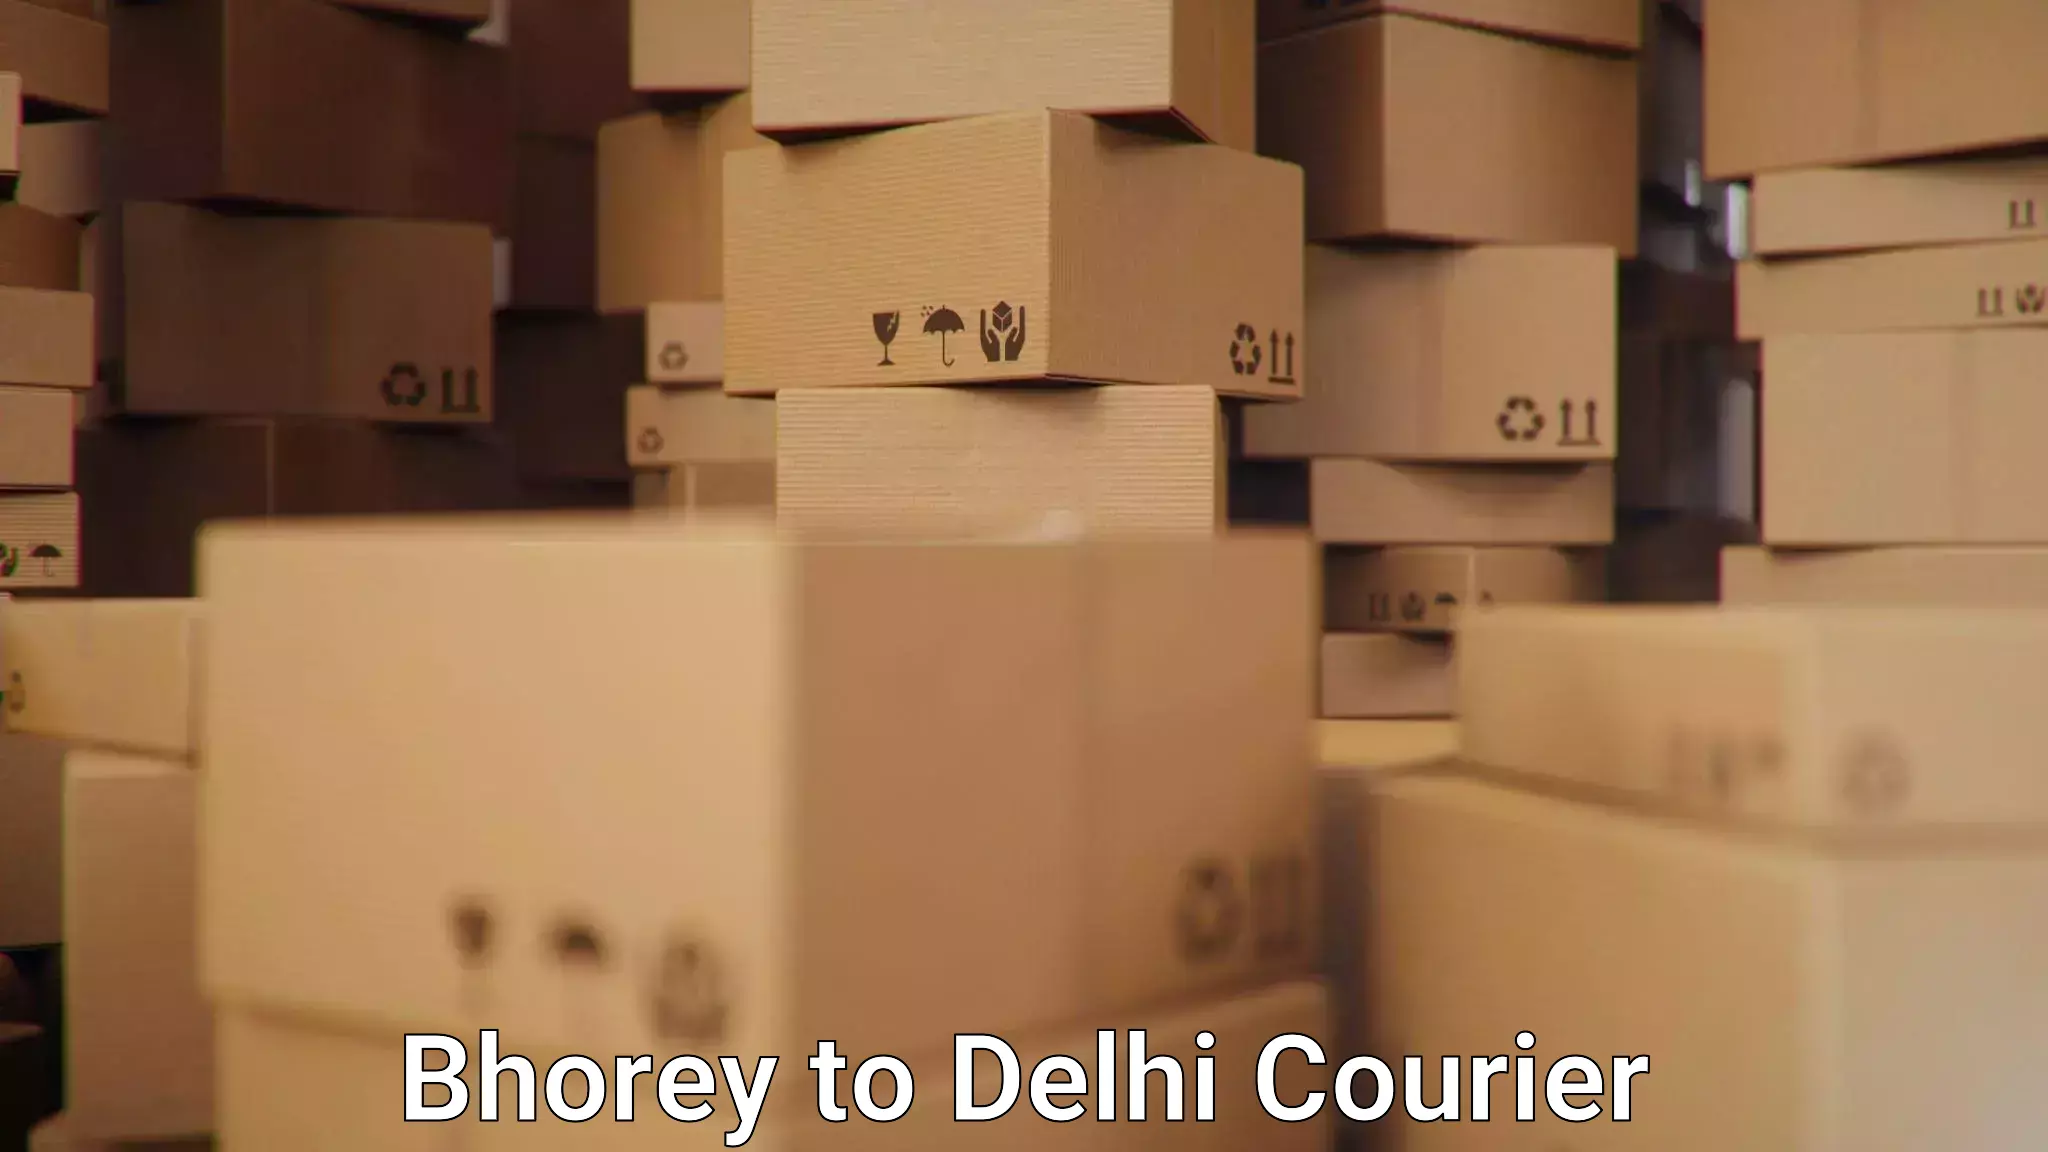 Courier service efficiency in Bhorey to Delhi